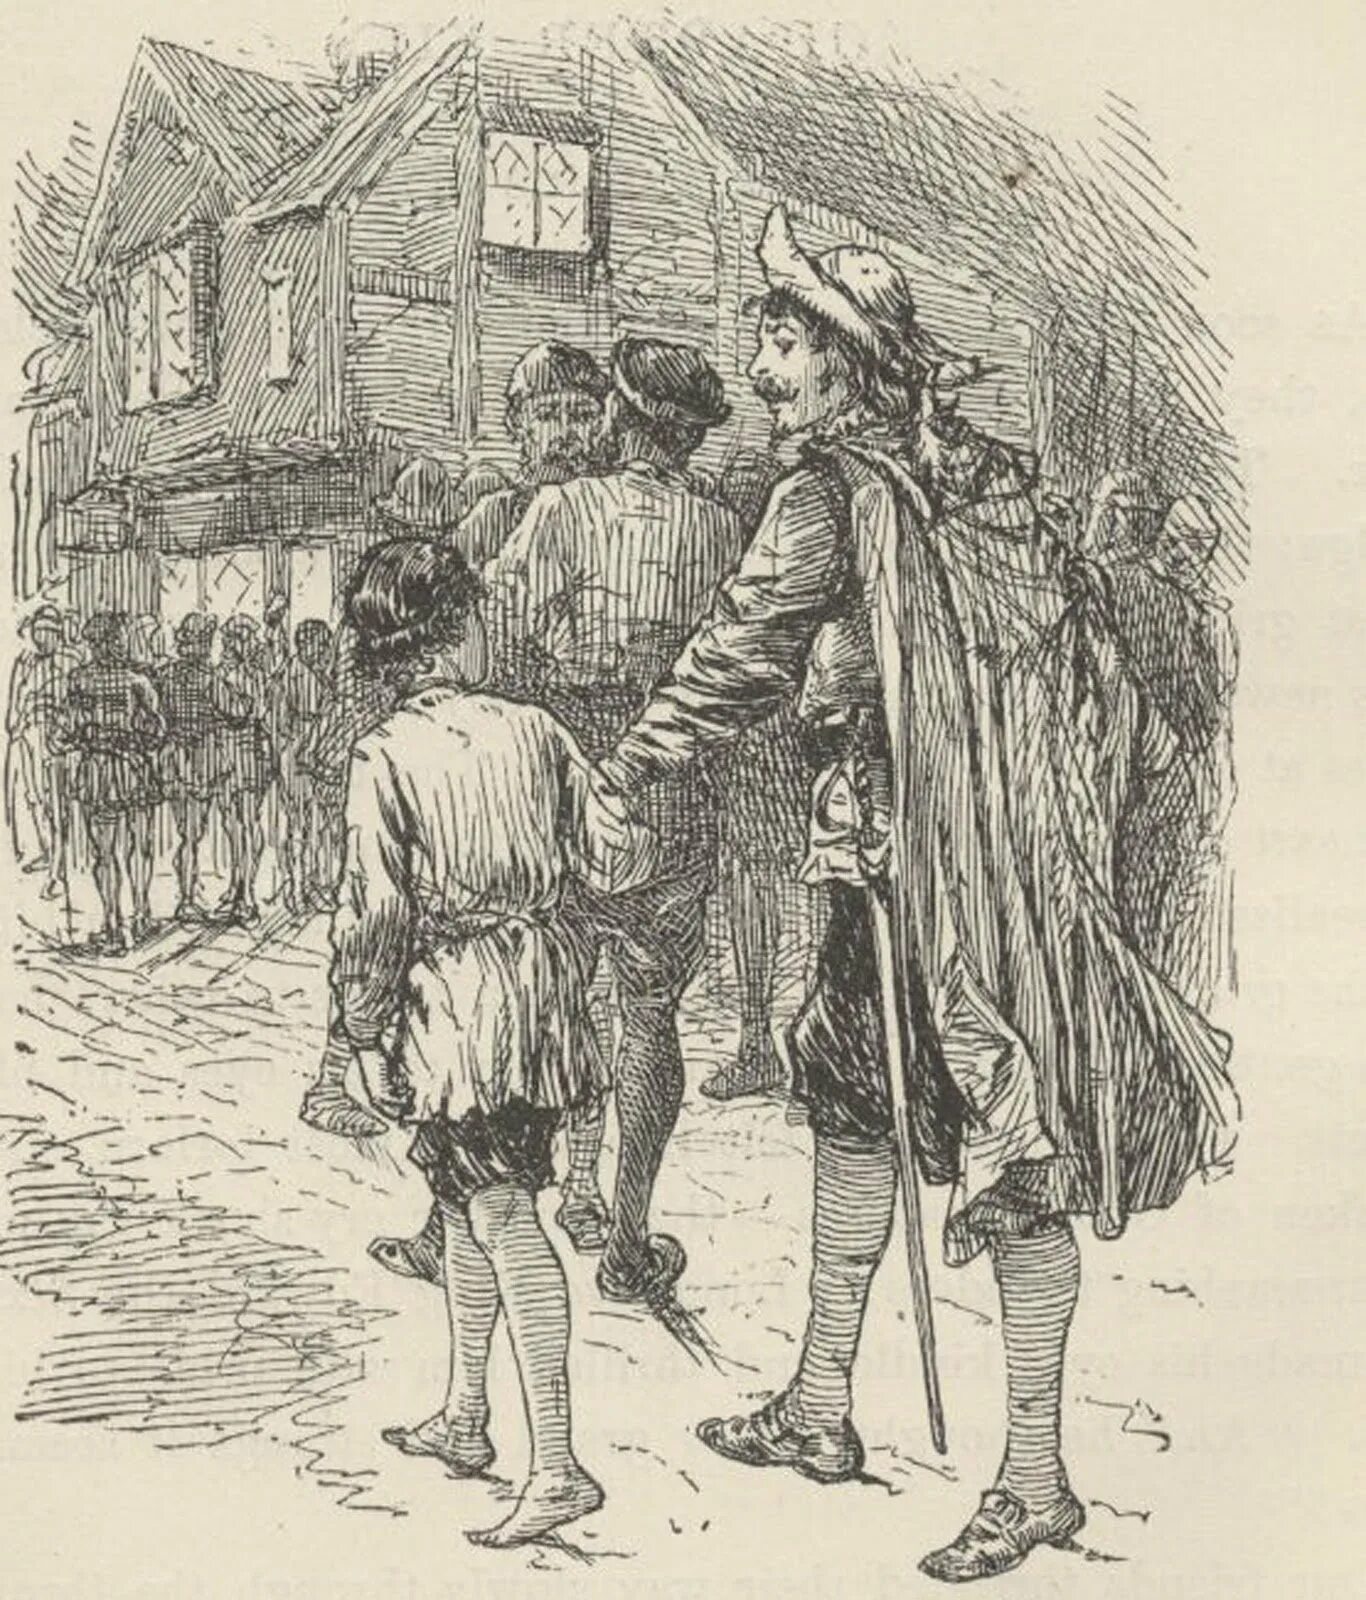 Четверо нищих краткое. Джон Кенти принц и нищий. The Prince and the Pauper illustrations. Принц и нищий иллюстрации Иткина.